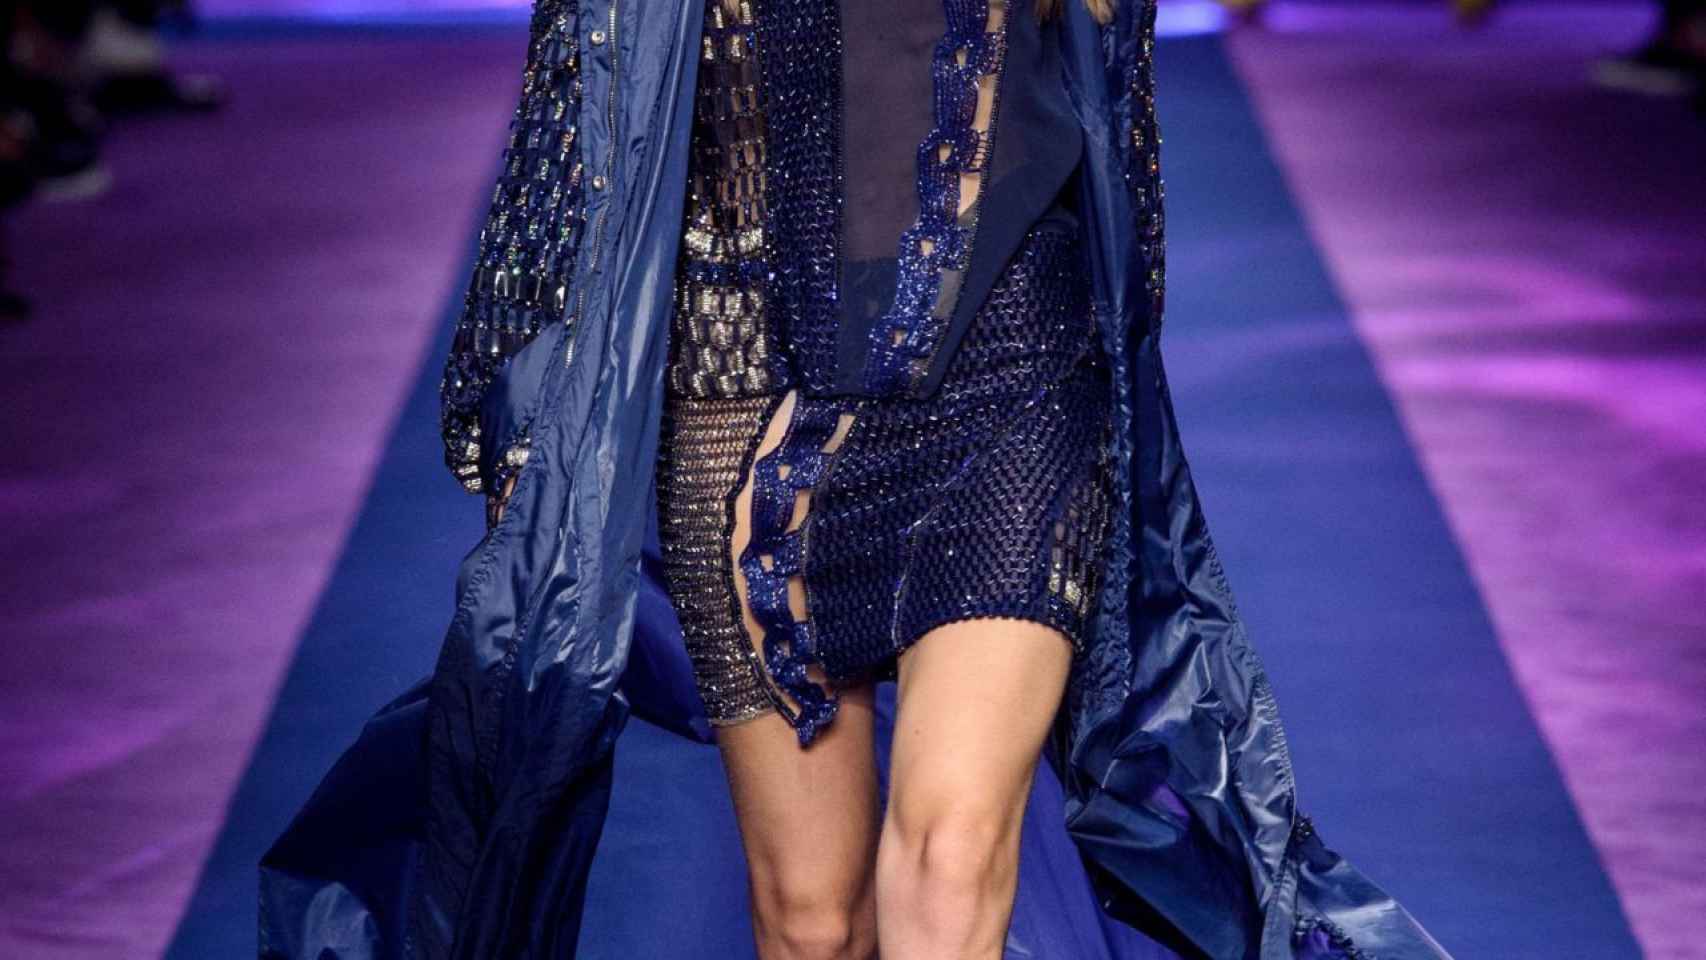 La modelo Gigi Hadid en una pasarela / CG